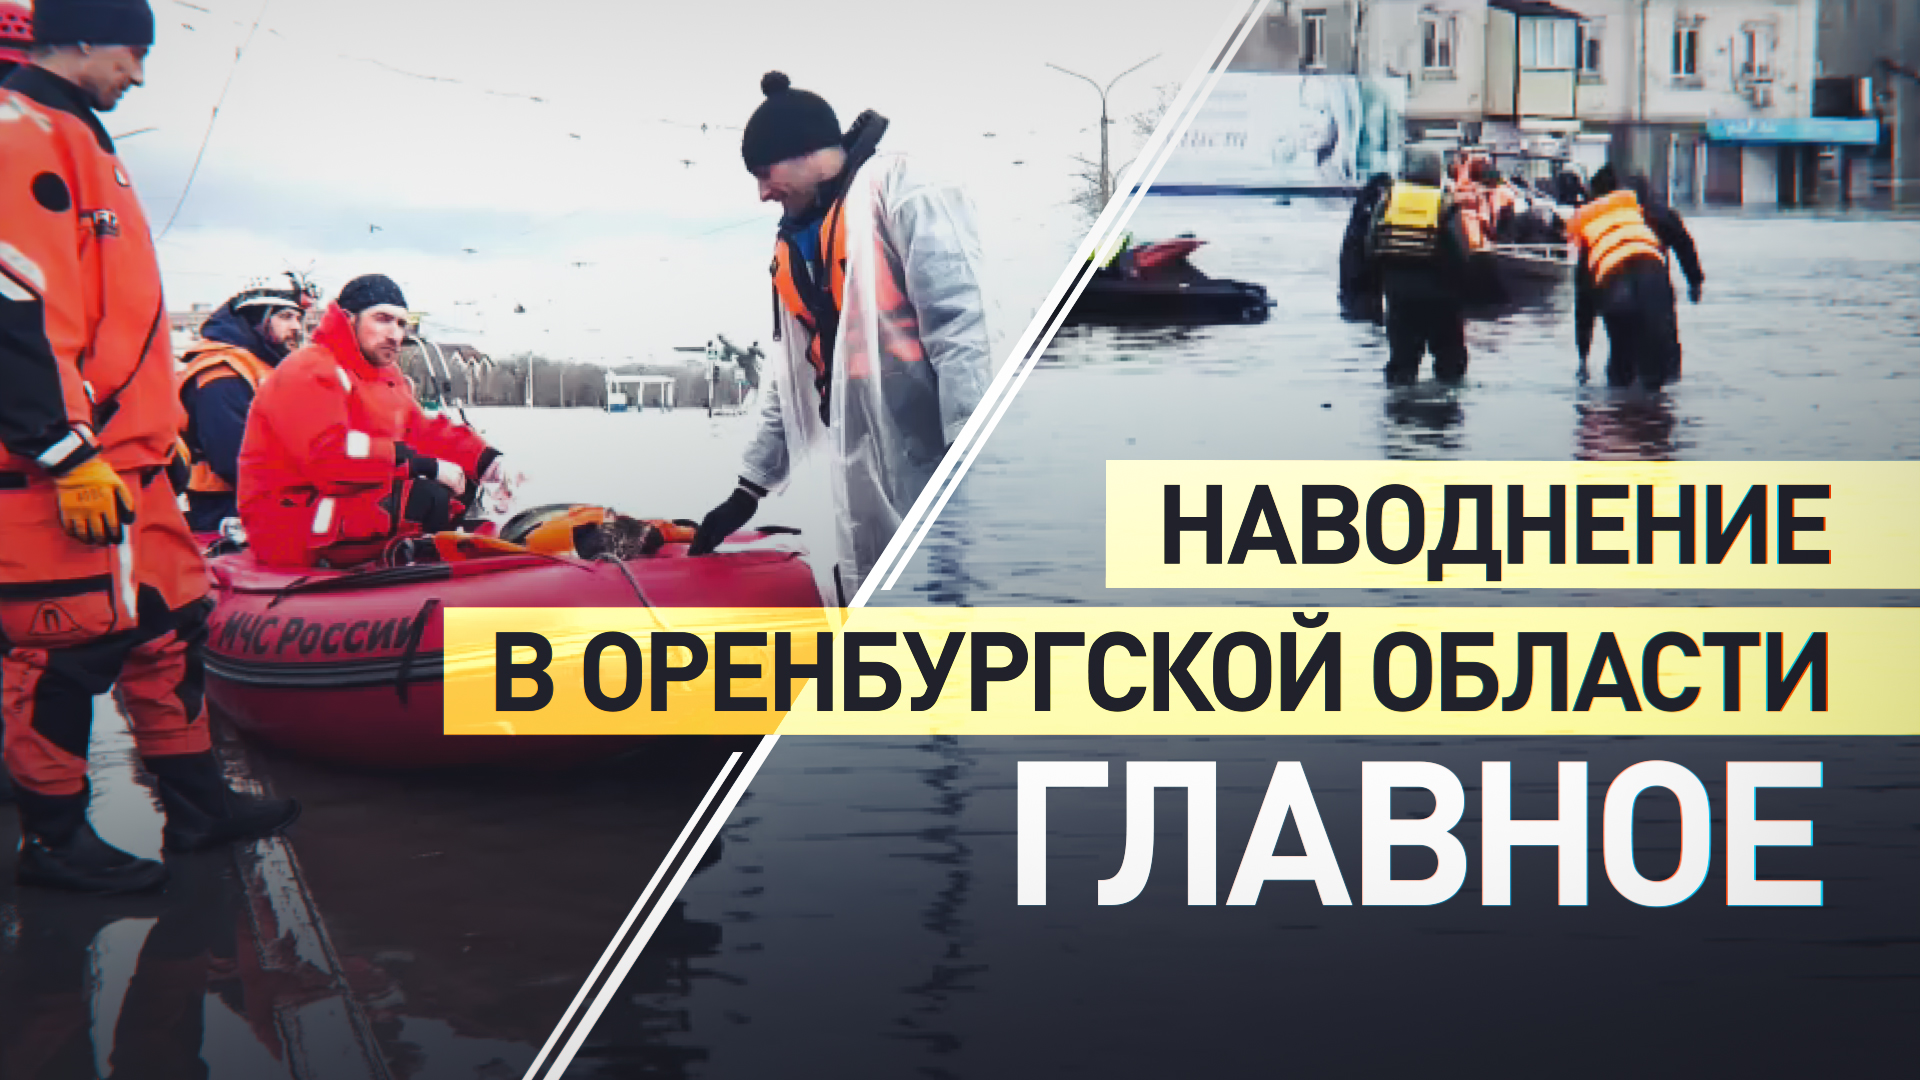 Рост уровня воды и эвакуация: главное о ситуации с паводком в Оренбургской области